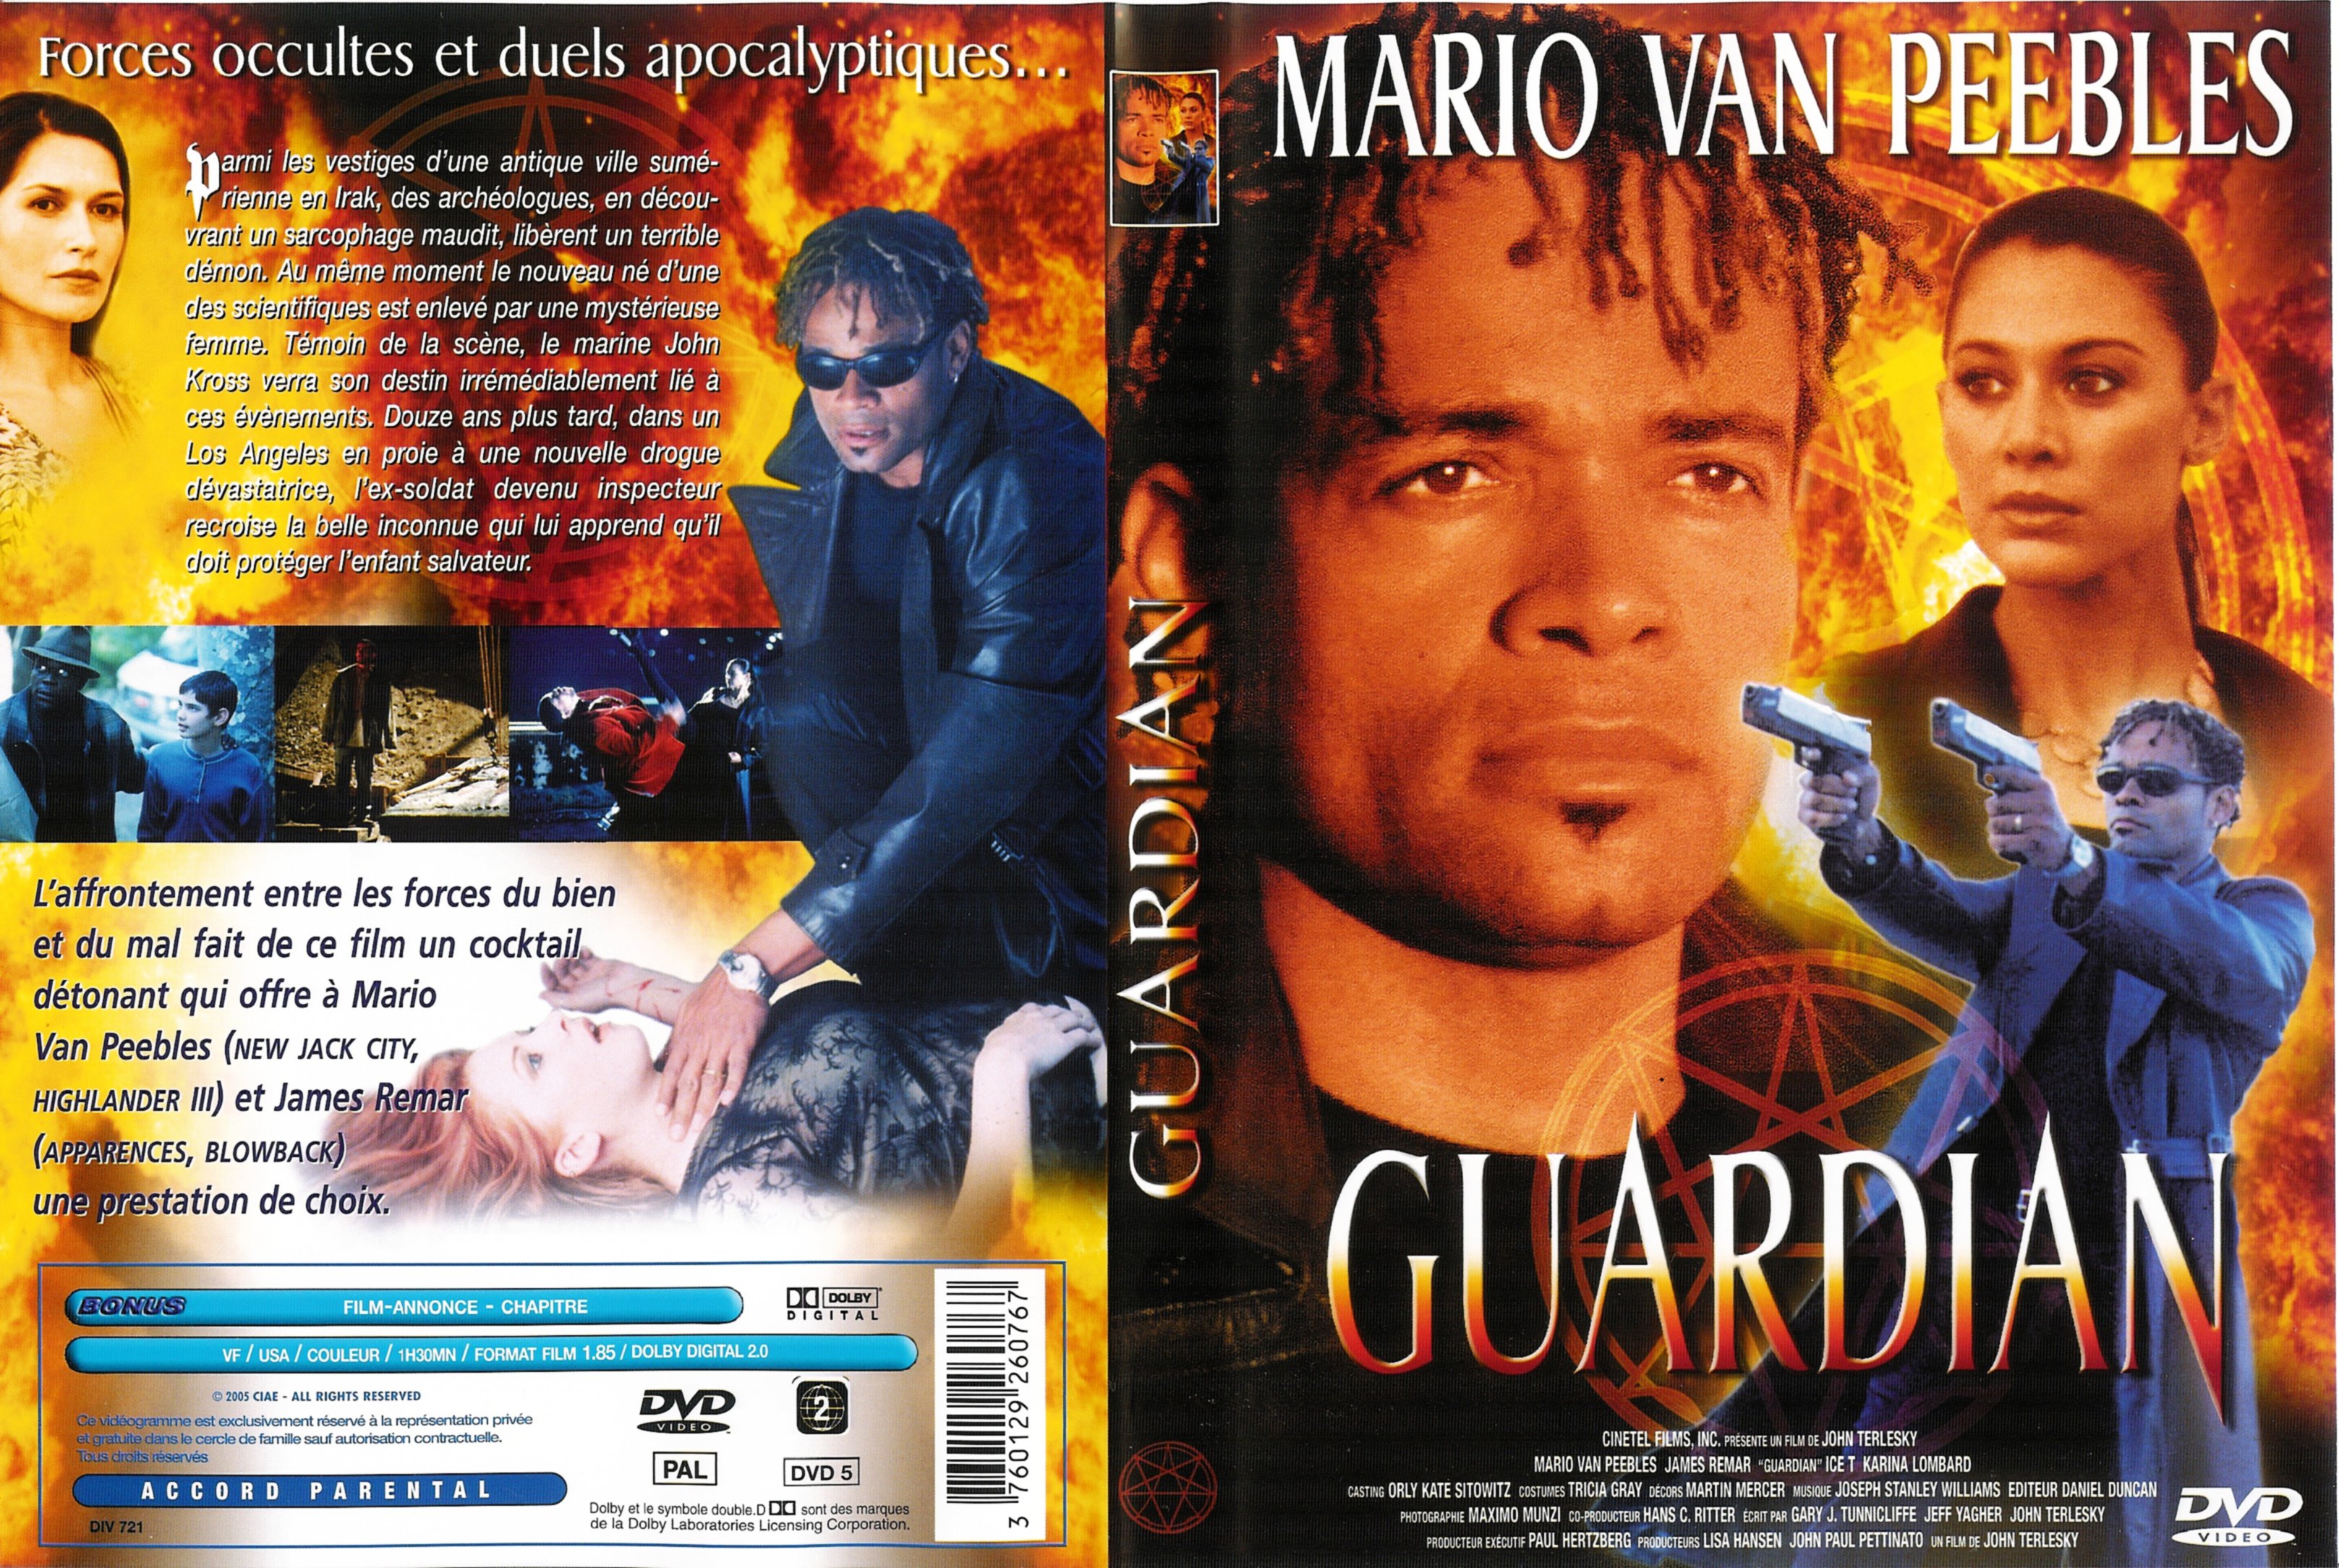 Jaquette DVD Guardian